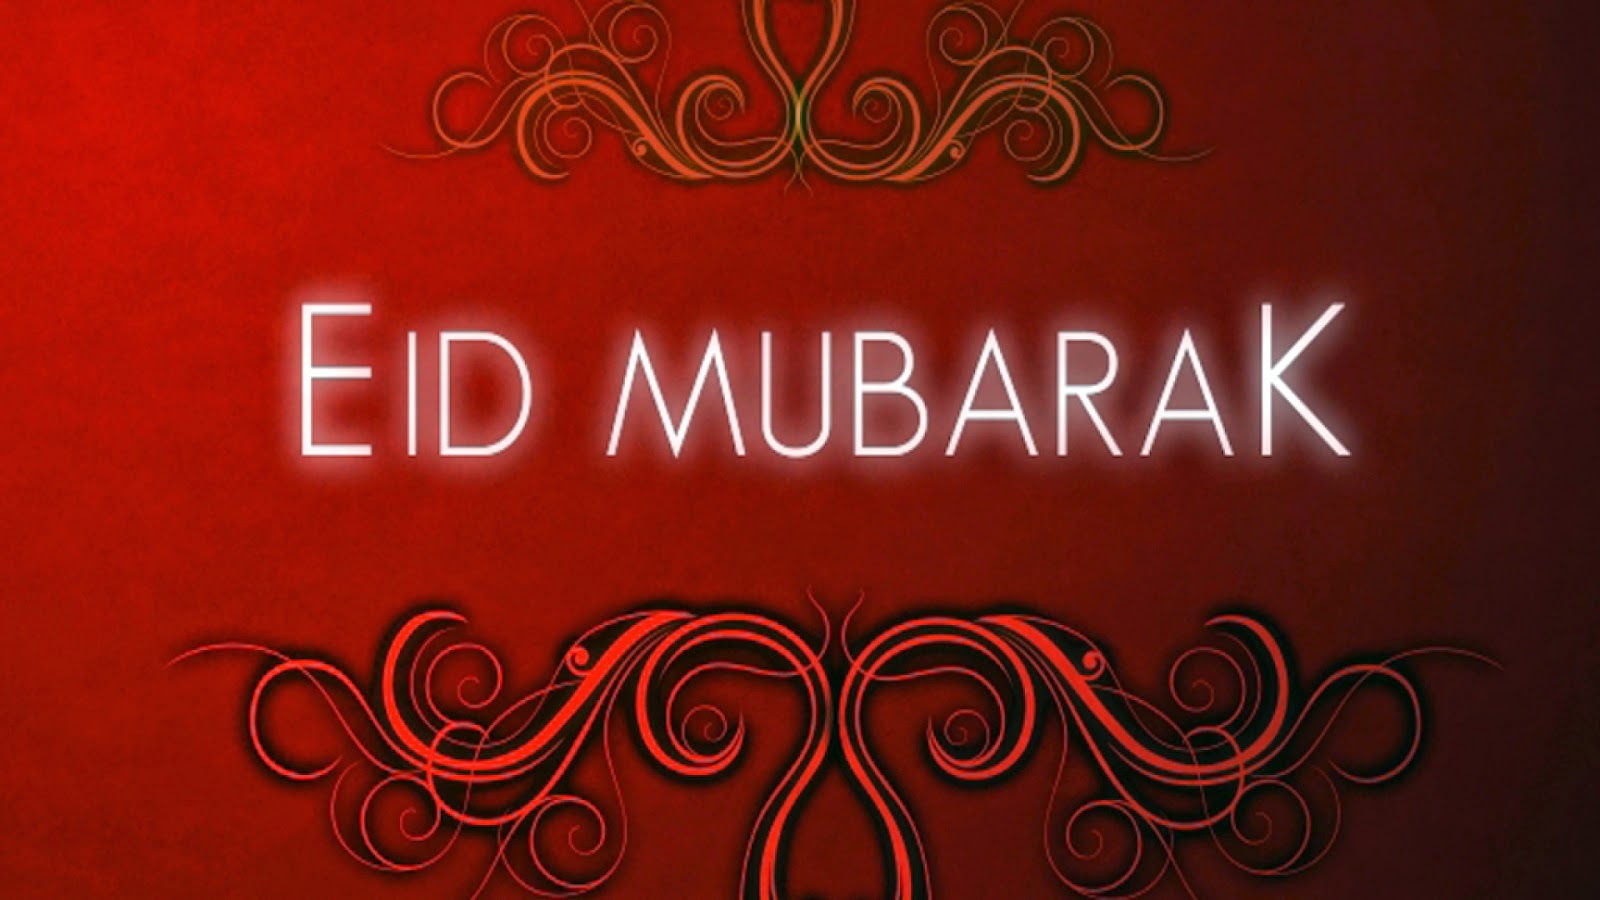 Eid Mubarak SMS, Greetings, Quotes And Wishes | Eid Mubarak 2019